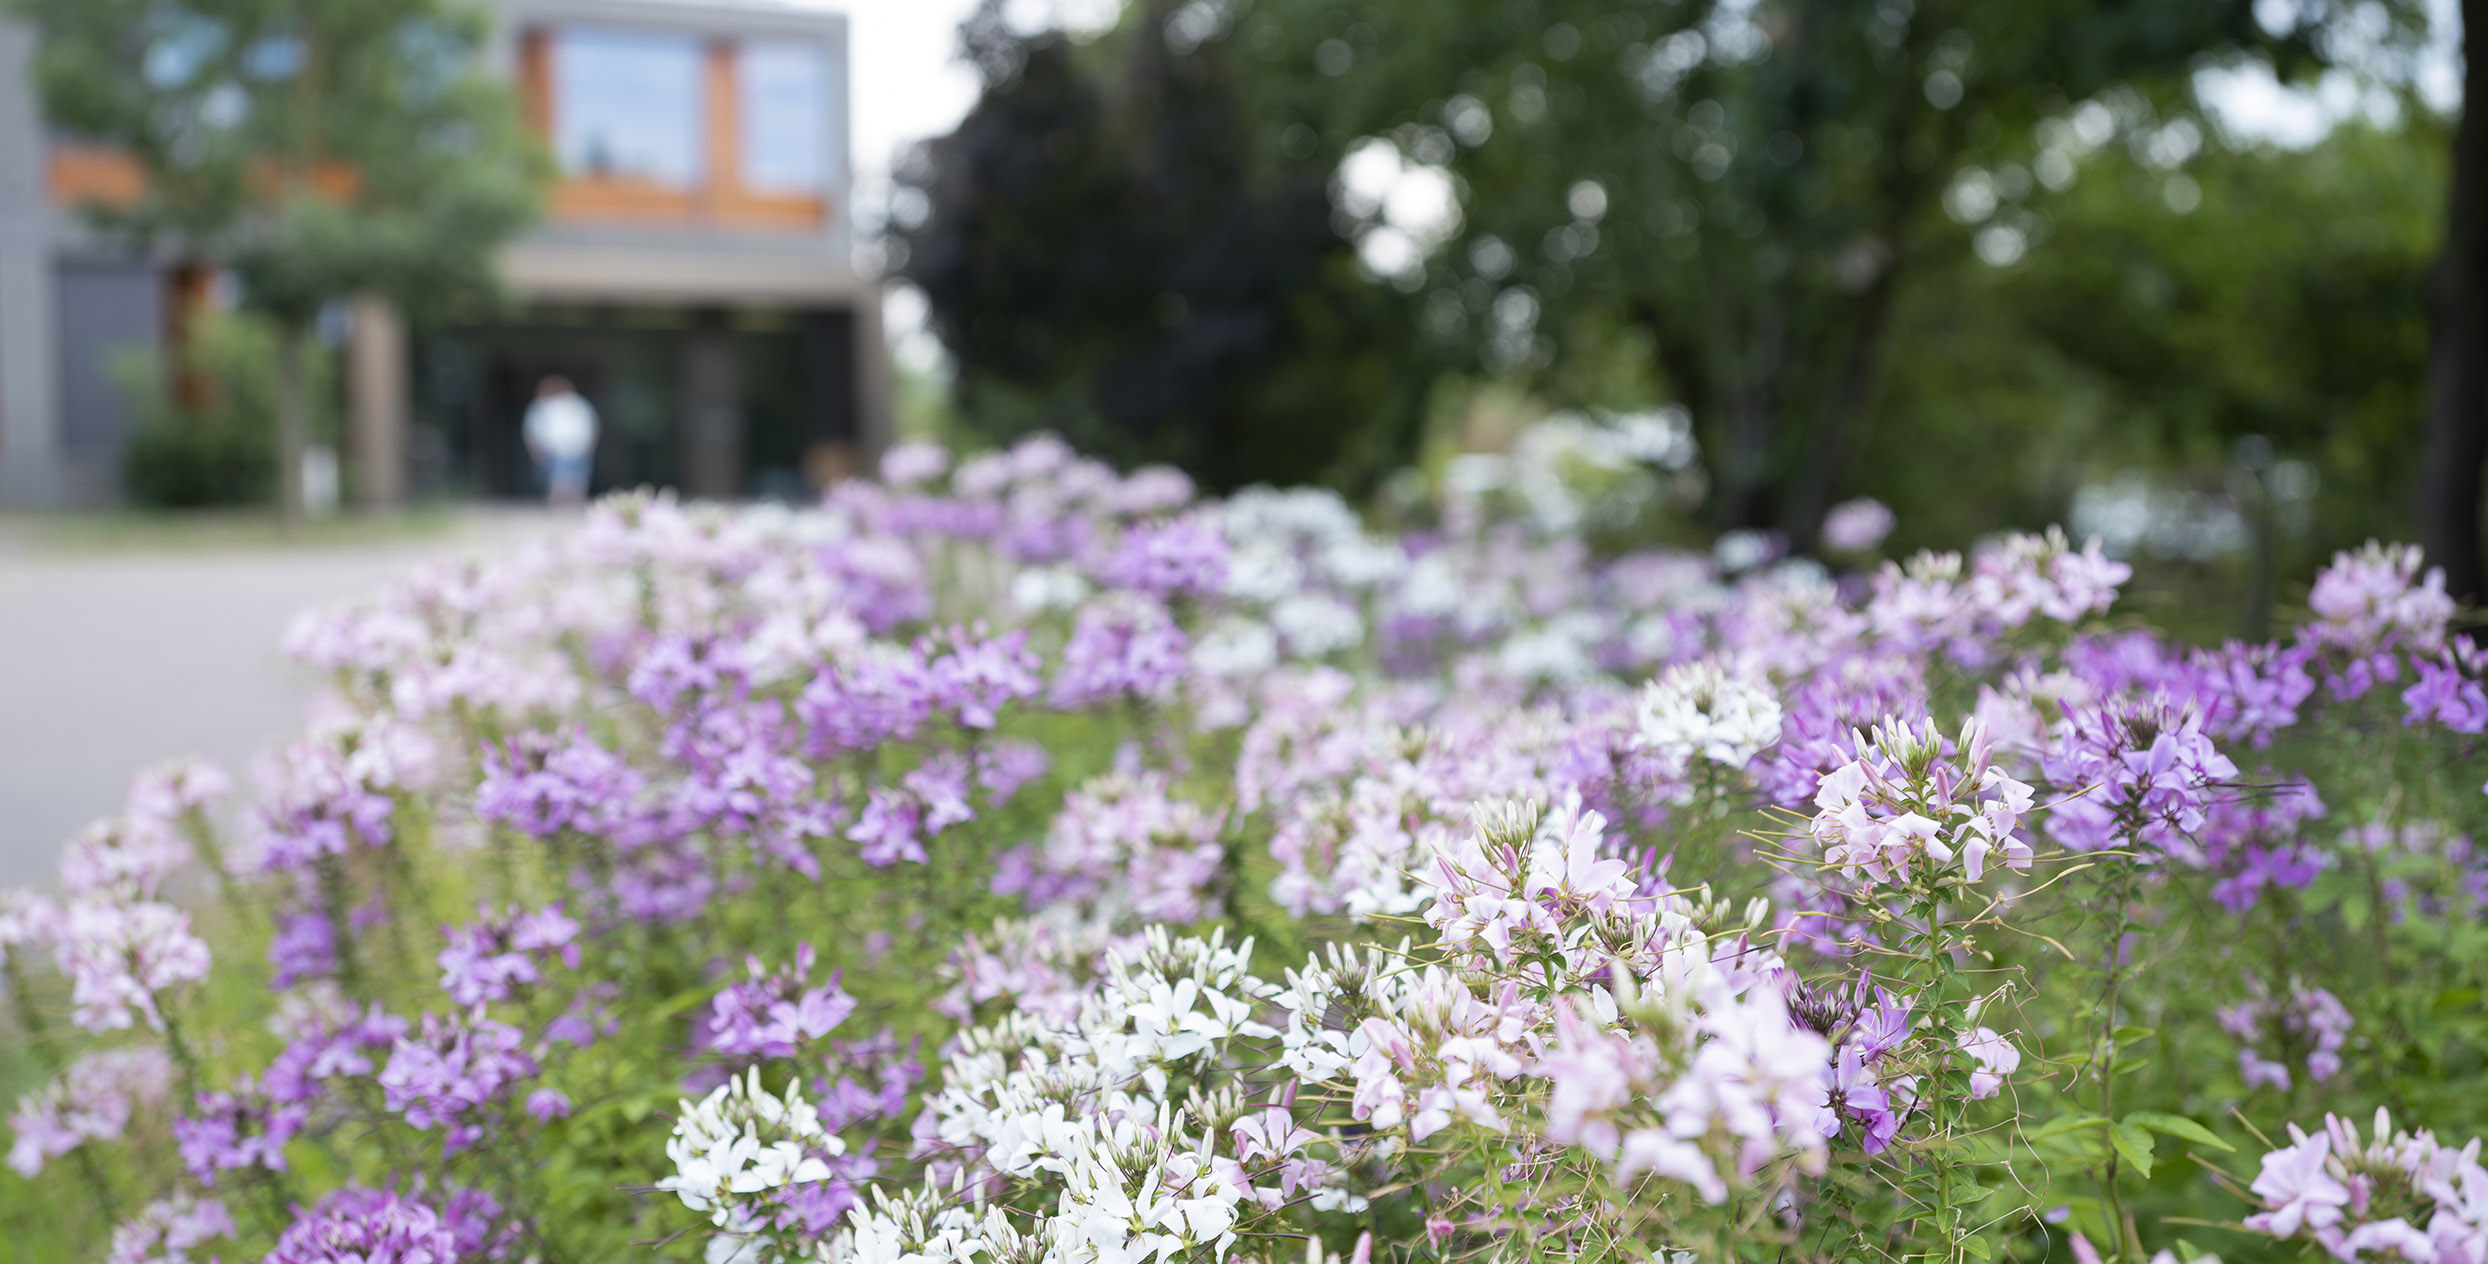 Violette und Weisse Blumen Nahaufnahme, im Hintergrund ein unscharfes Gebäude